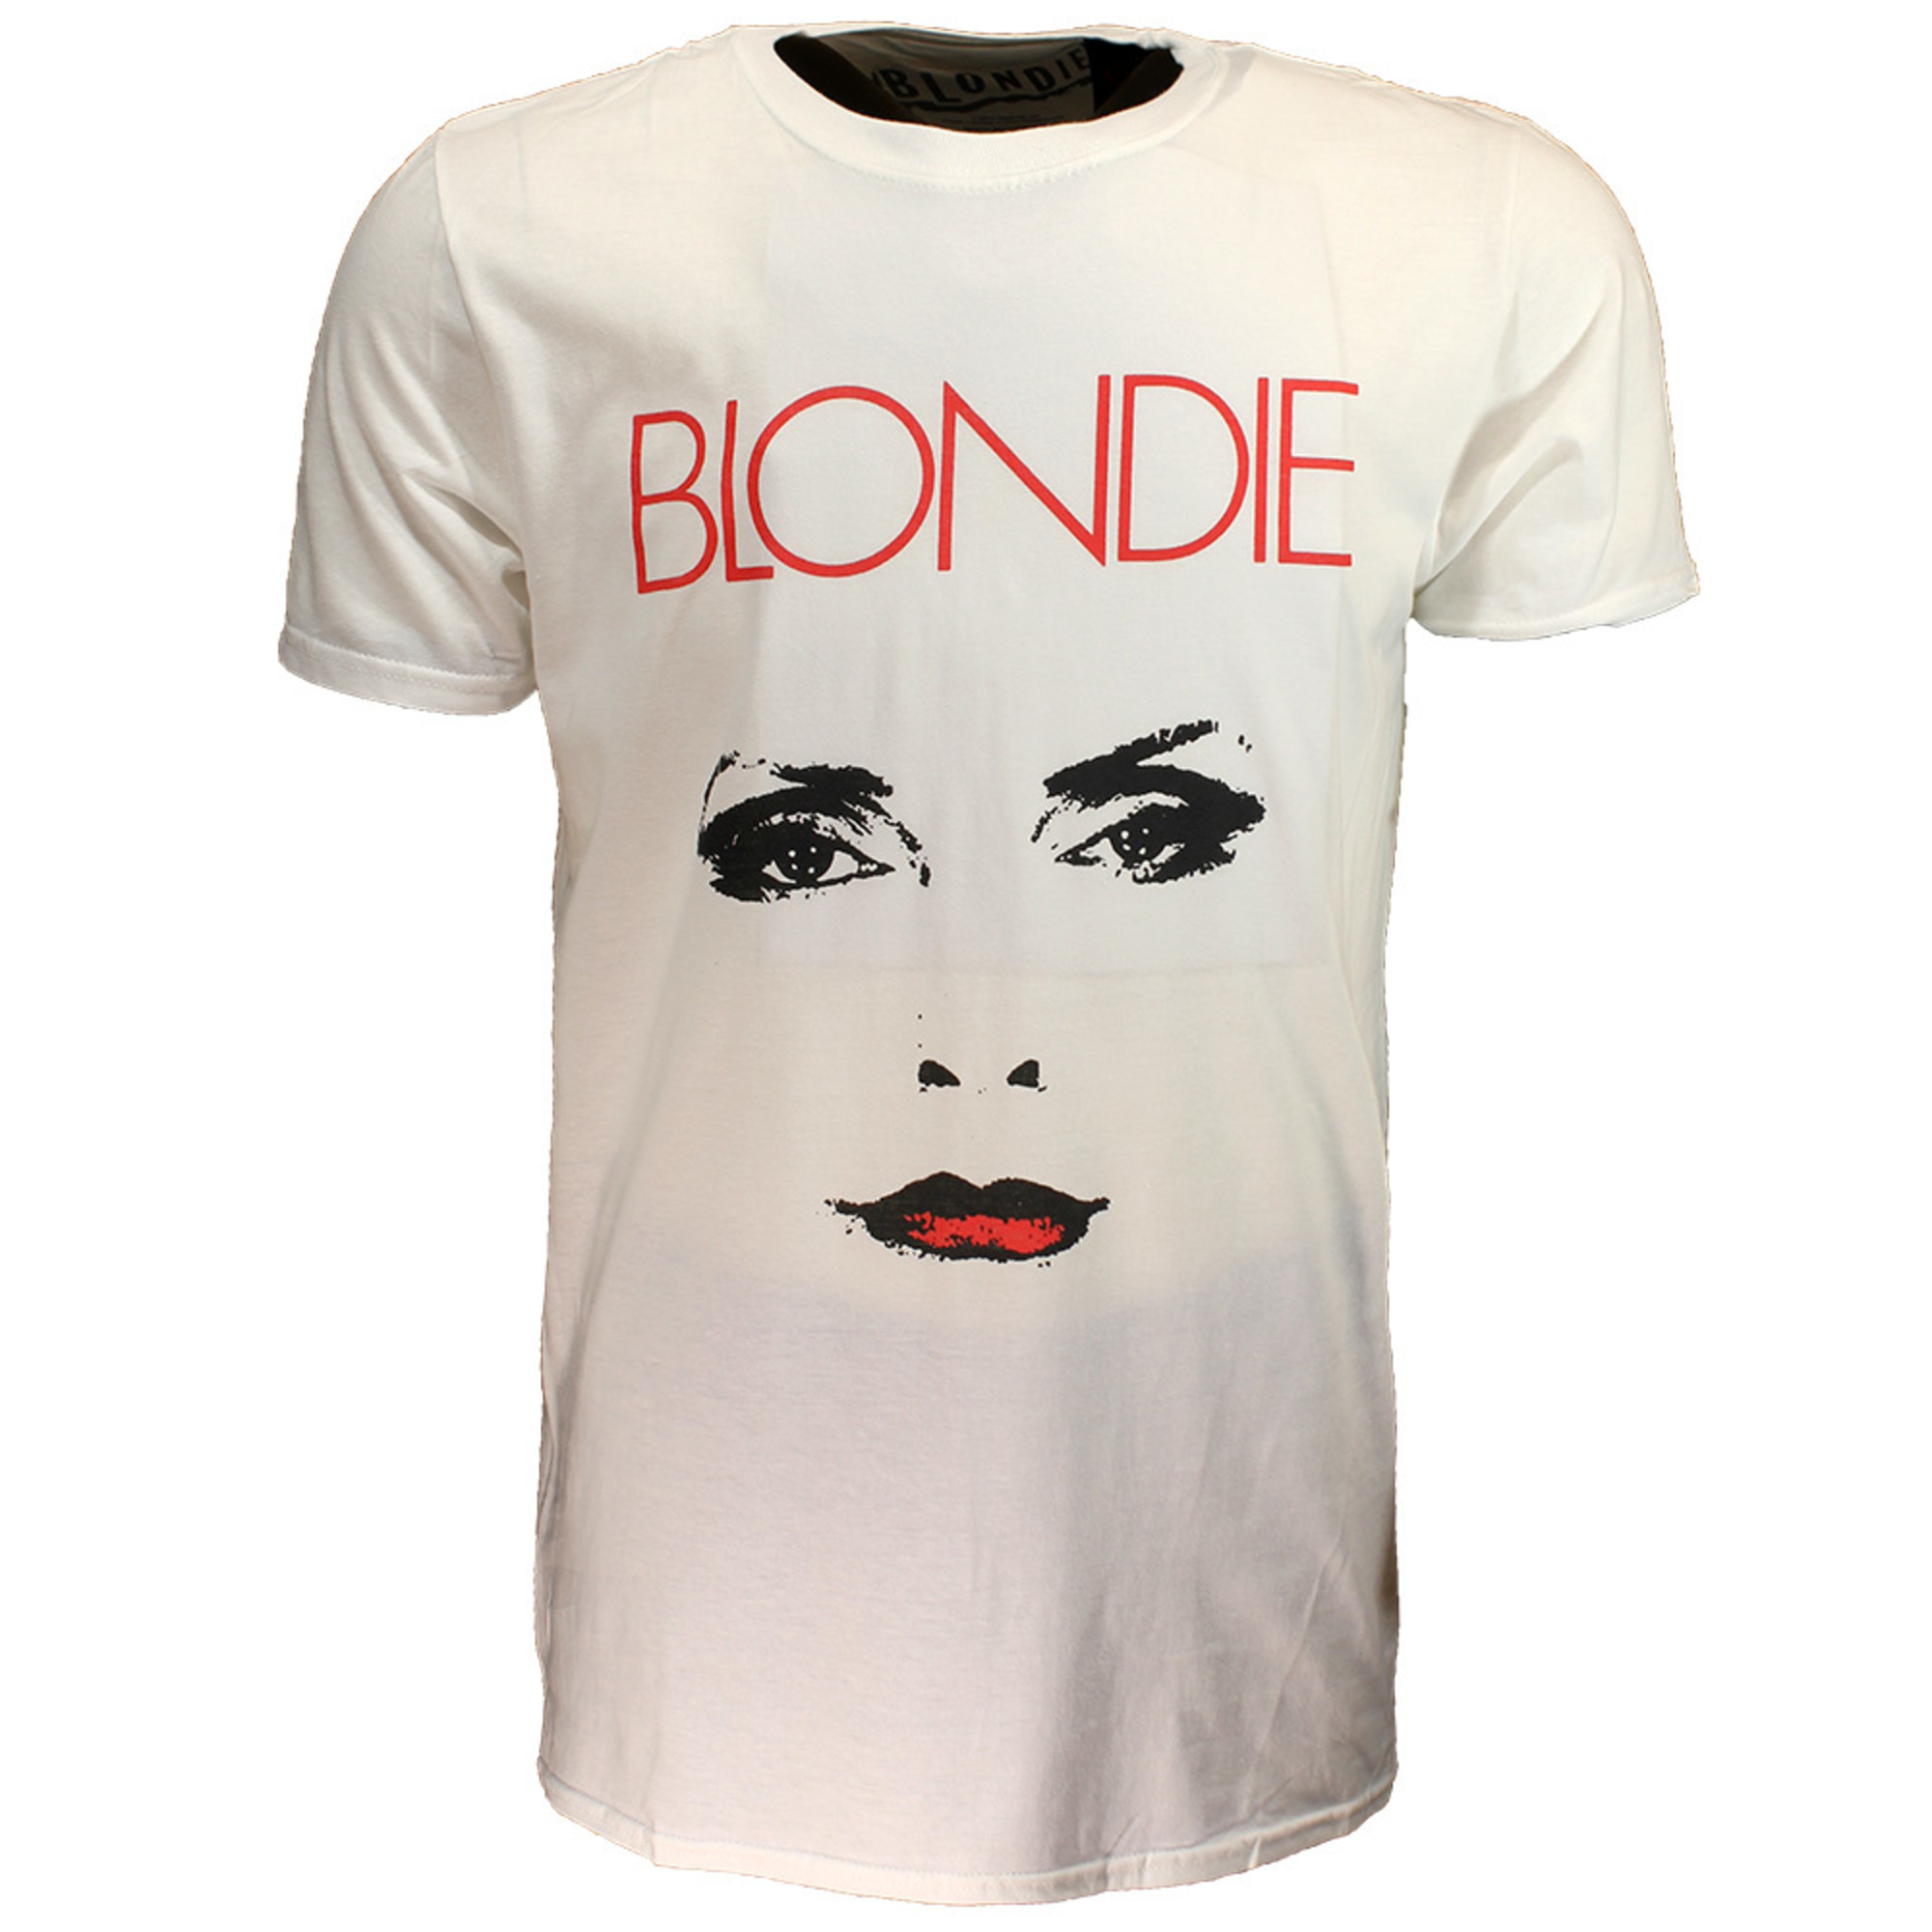 Blondie Staredown T-Shirt - Official Merchandise - Popmerch.com